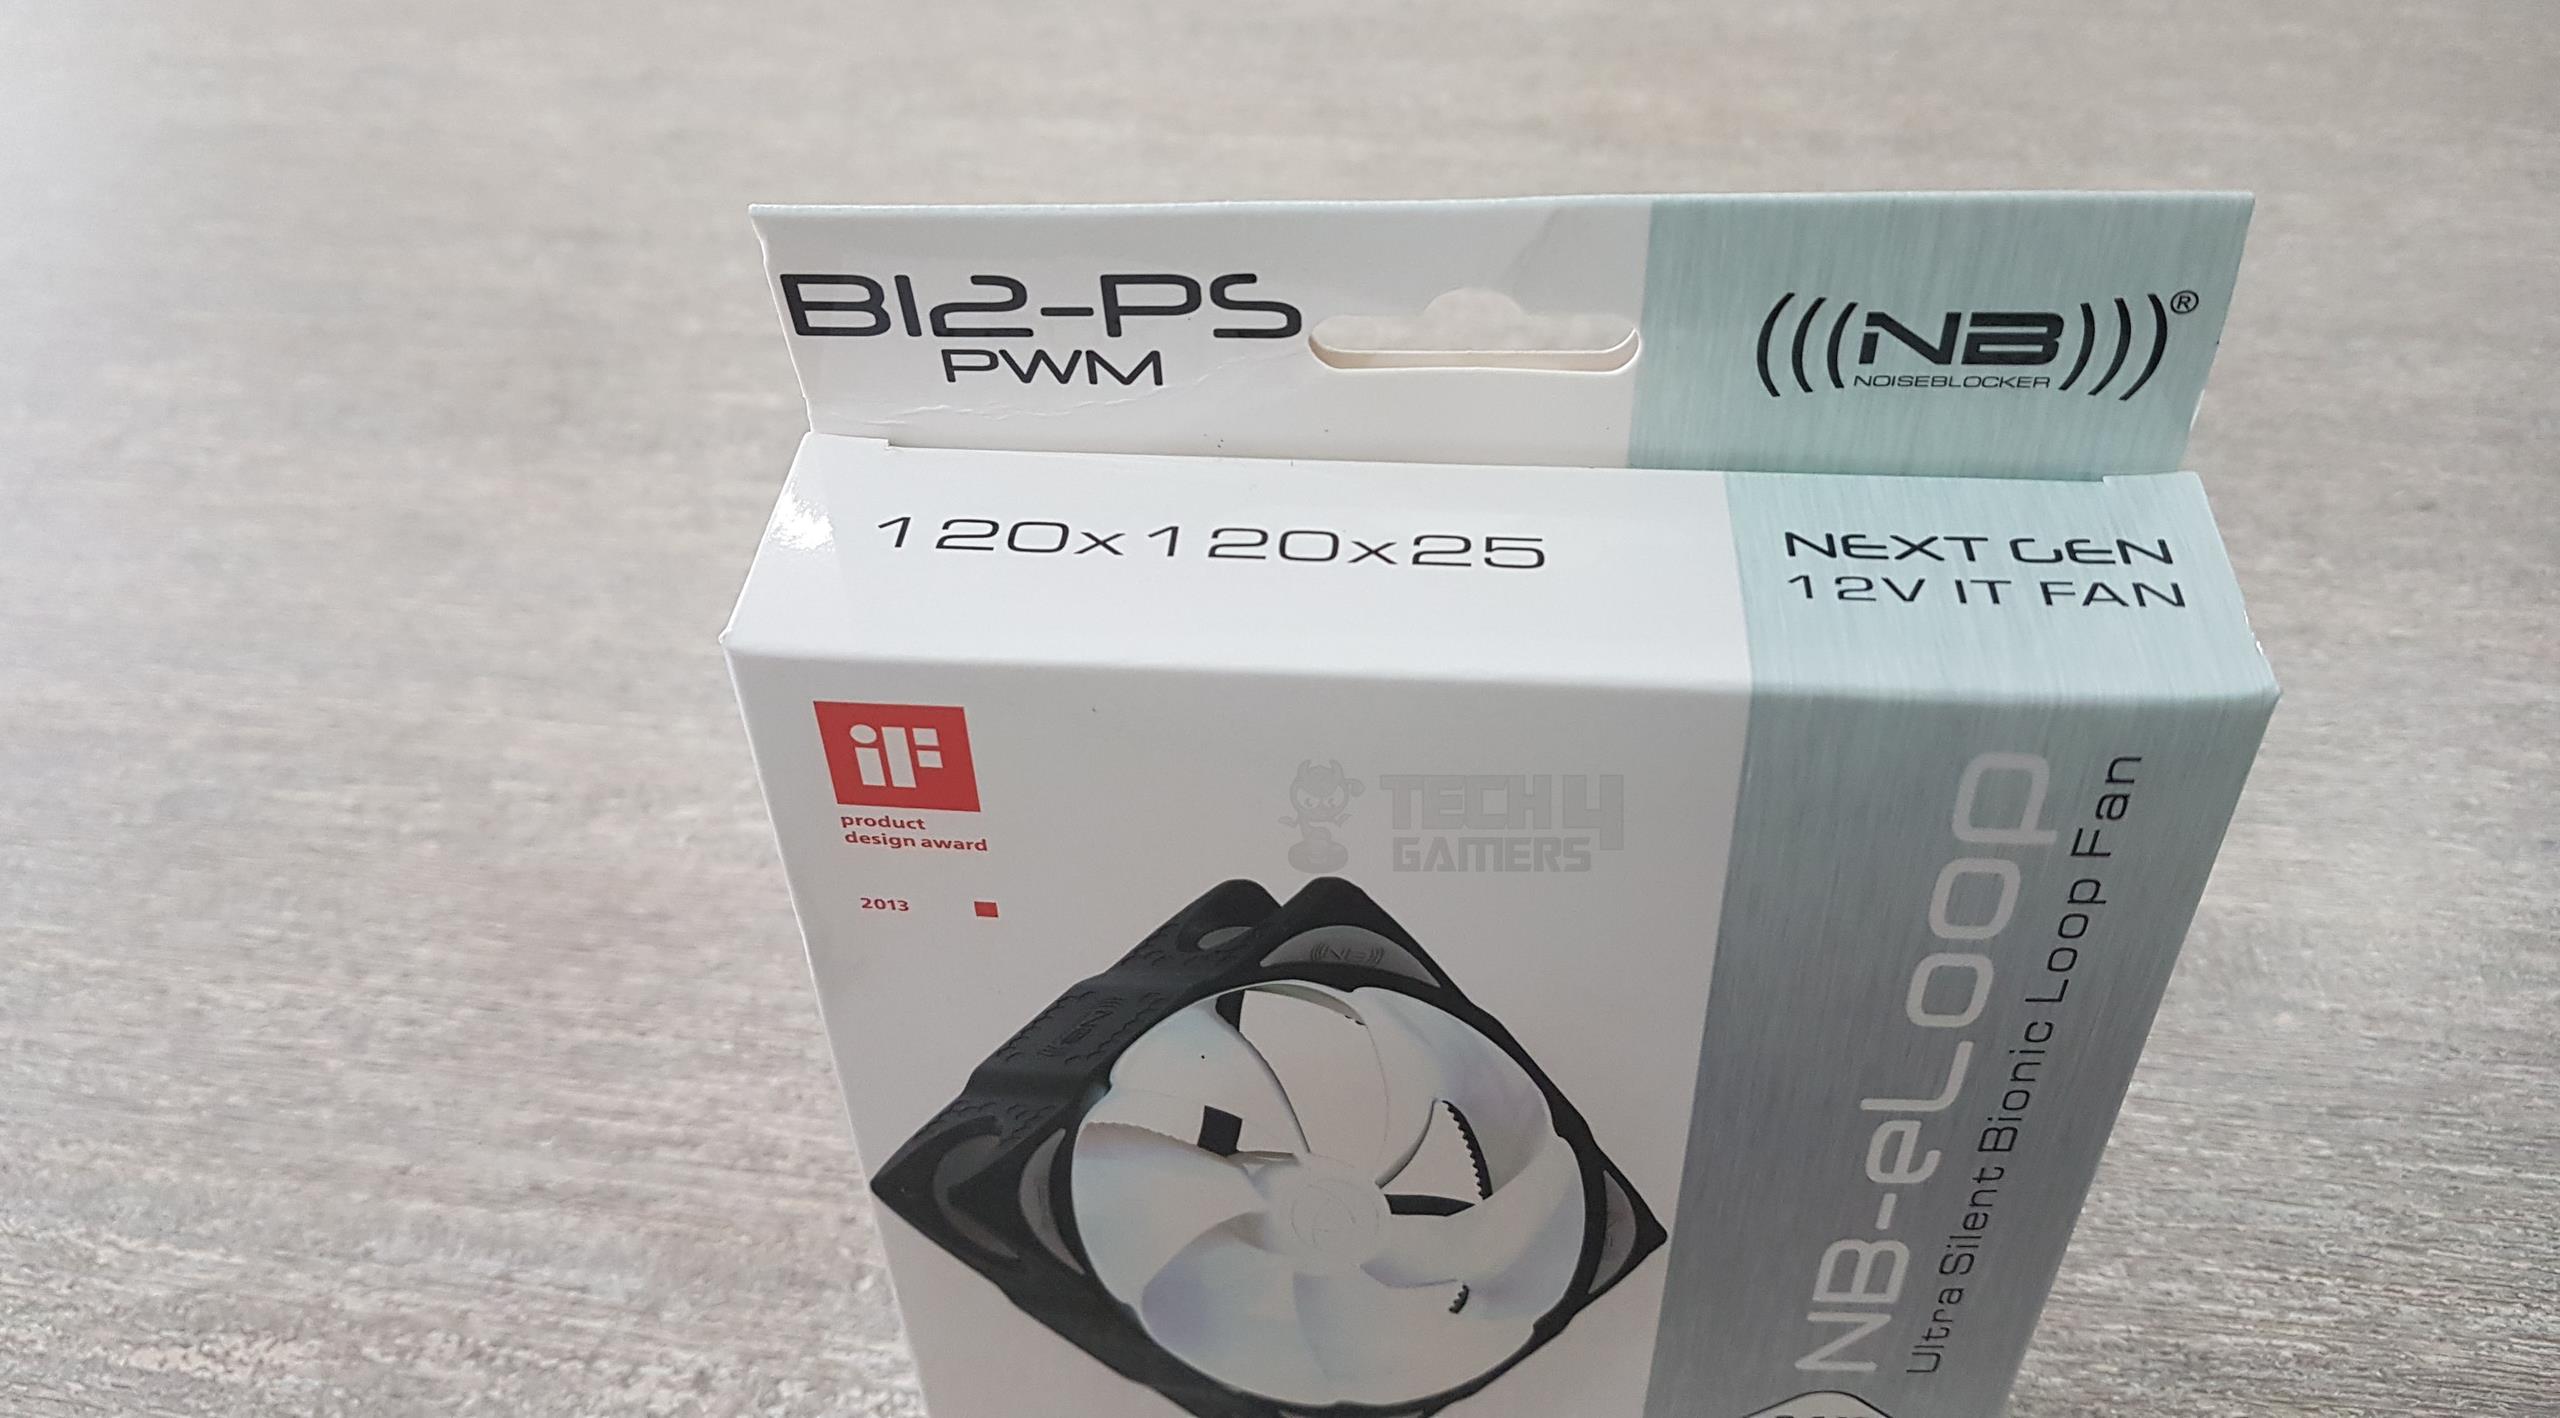 NB-eLoop B12-PS, B12-P Top Side Packaging 